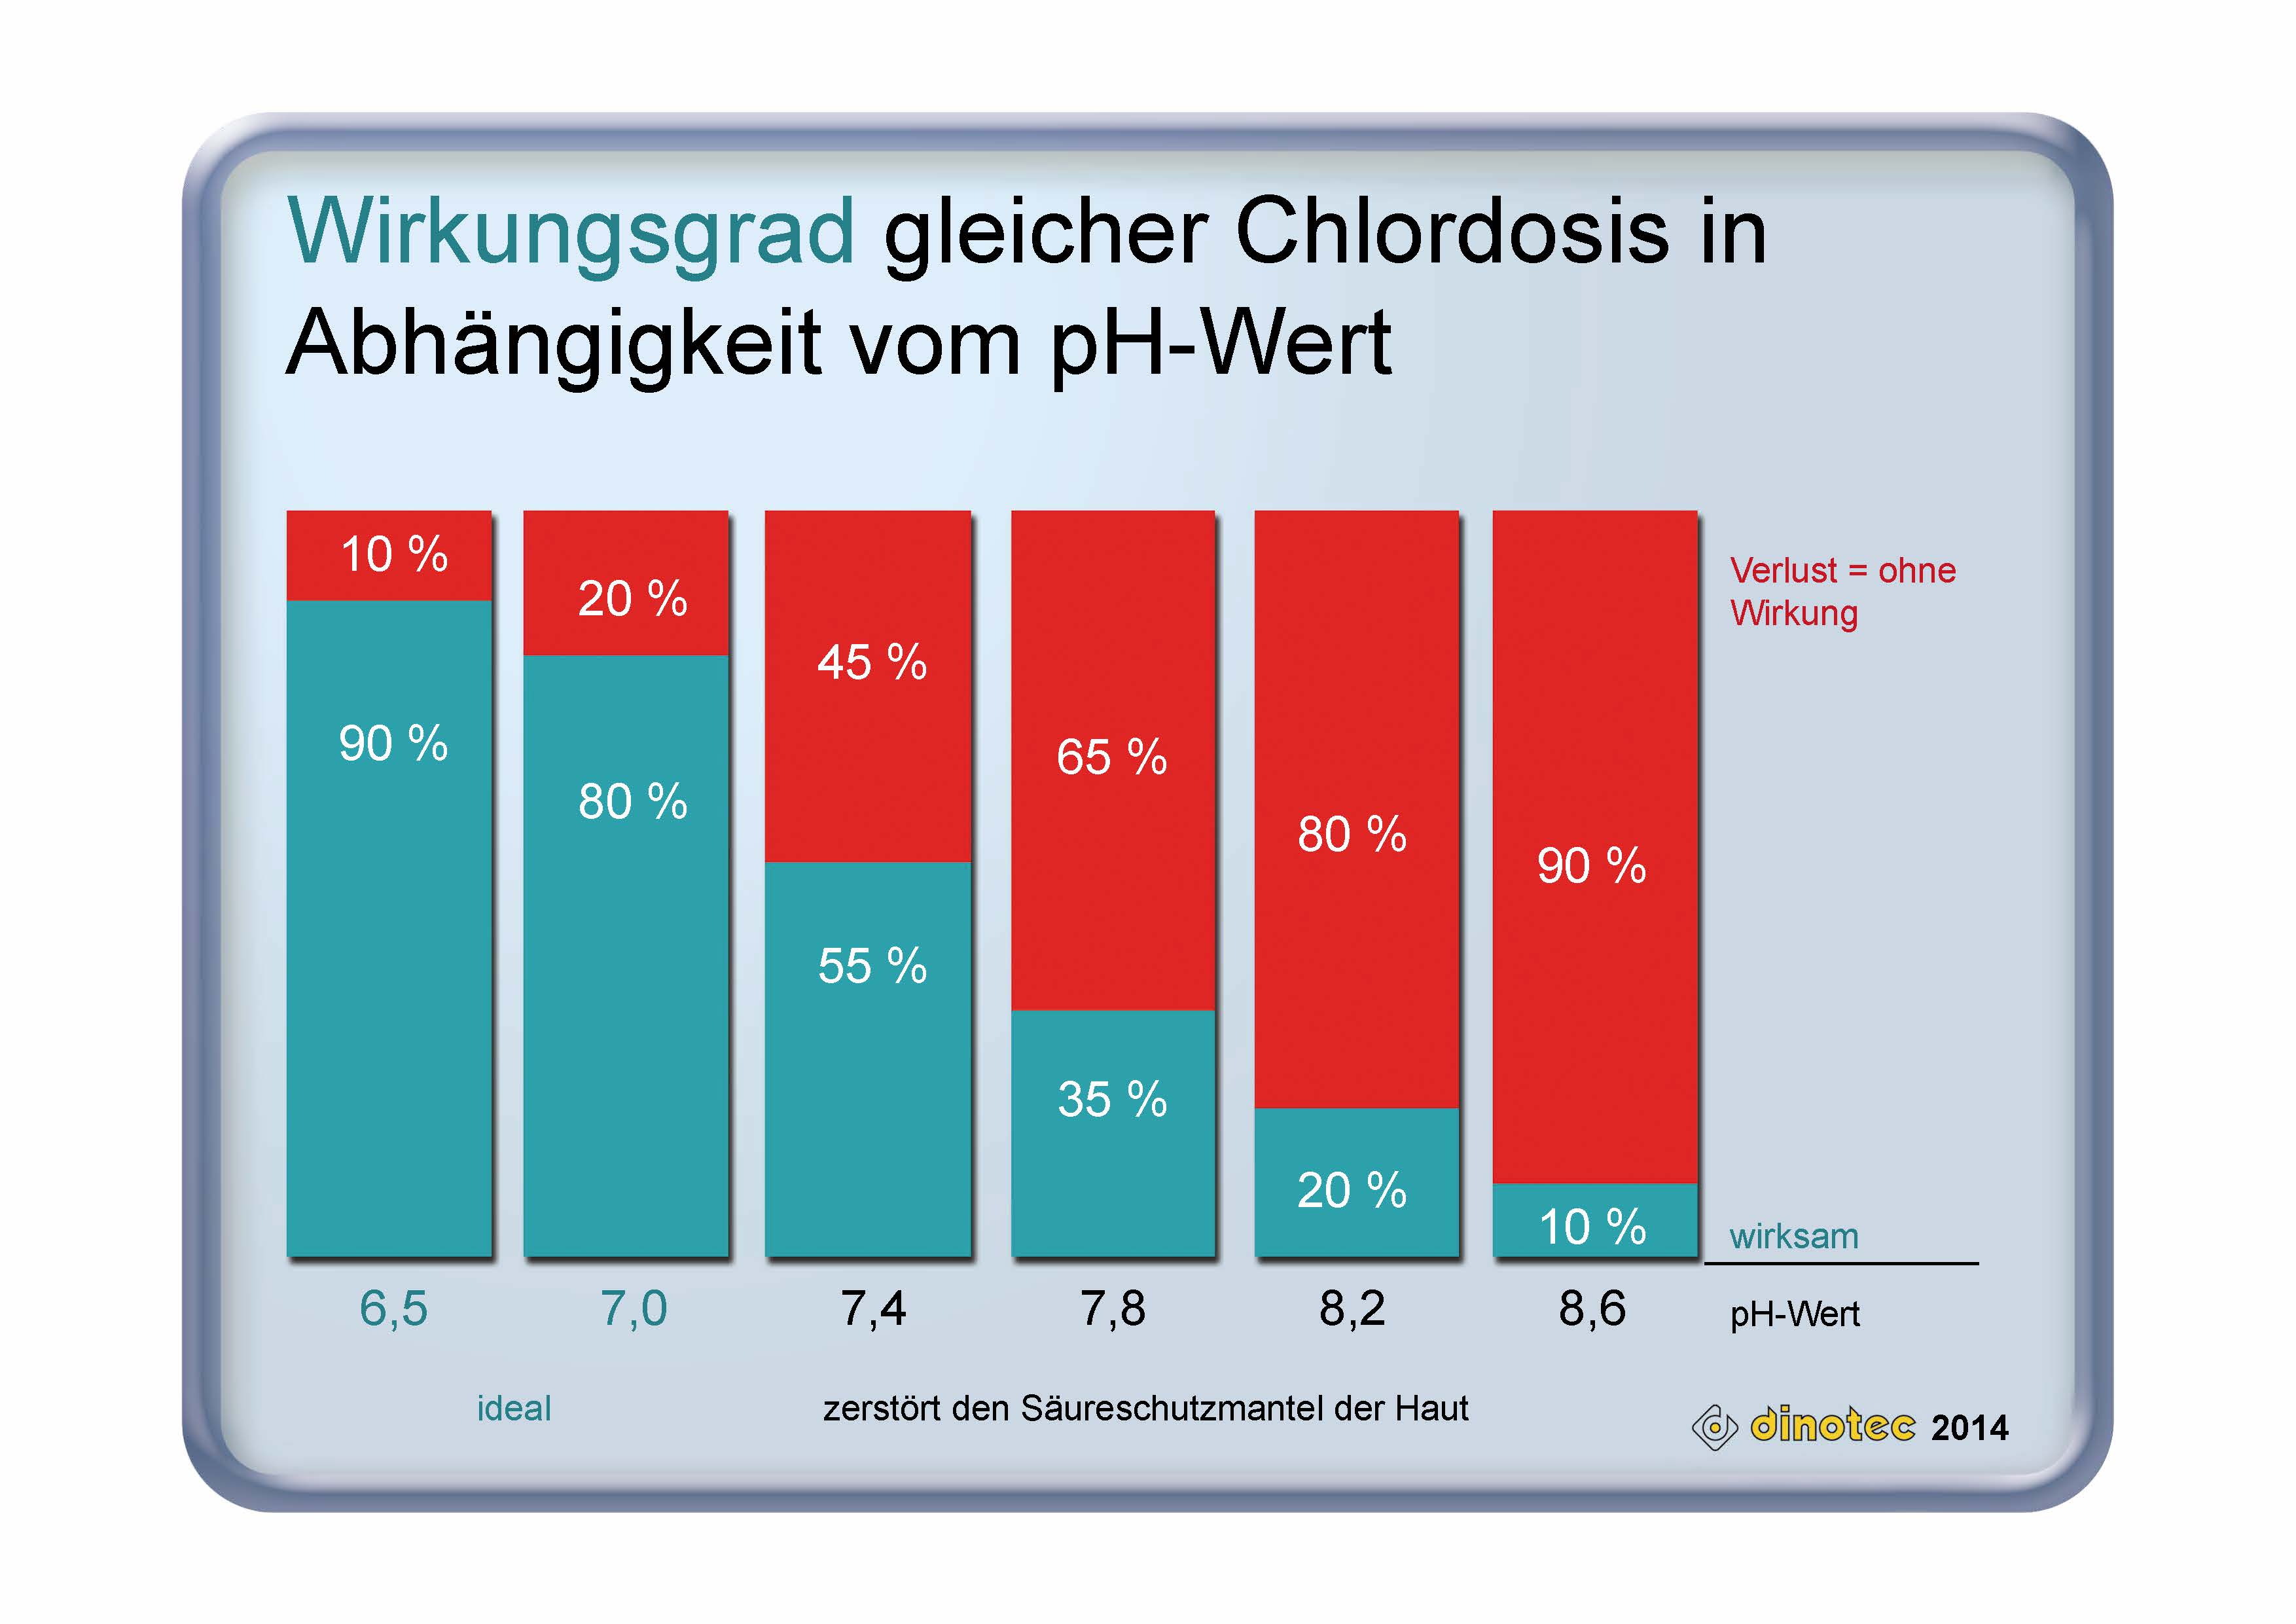 Wirkungsgrad gleicher Chlordosis in Abhängigkeit vom pH-Wert